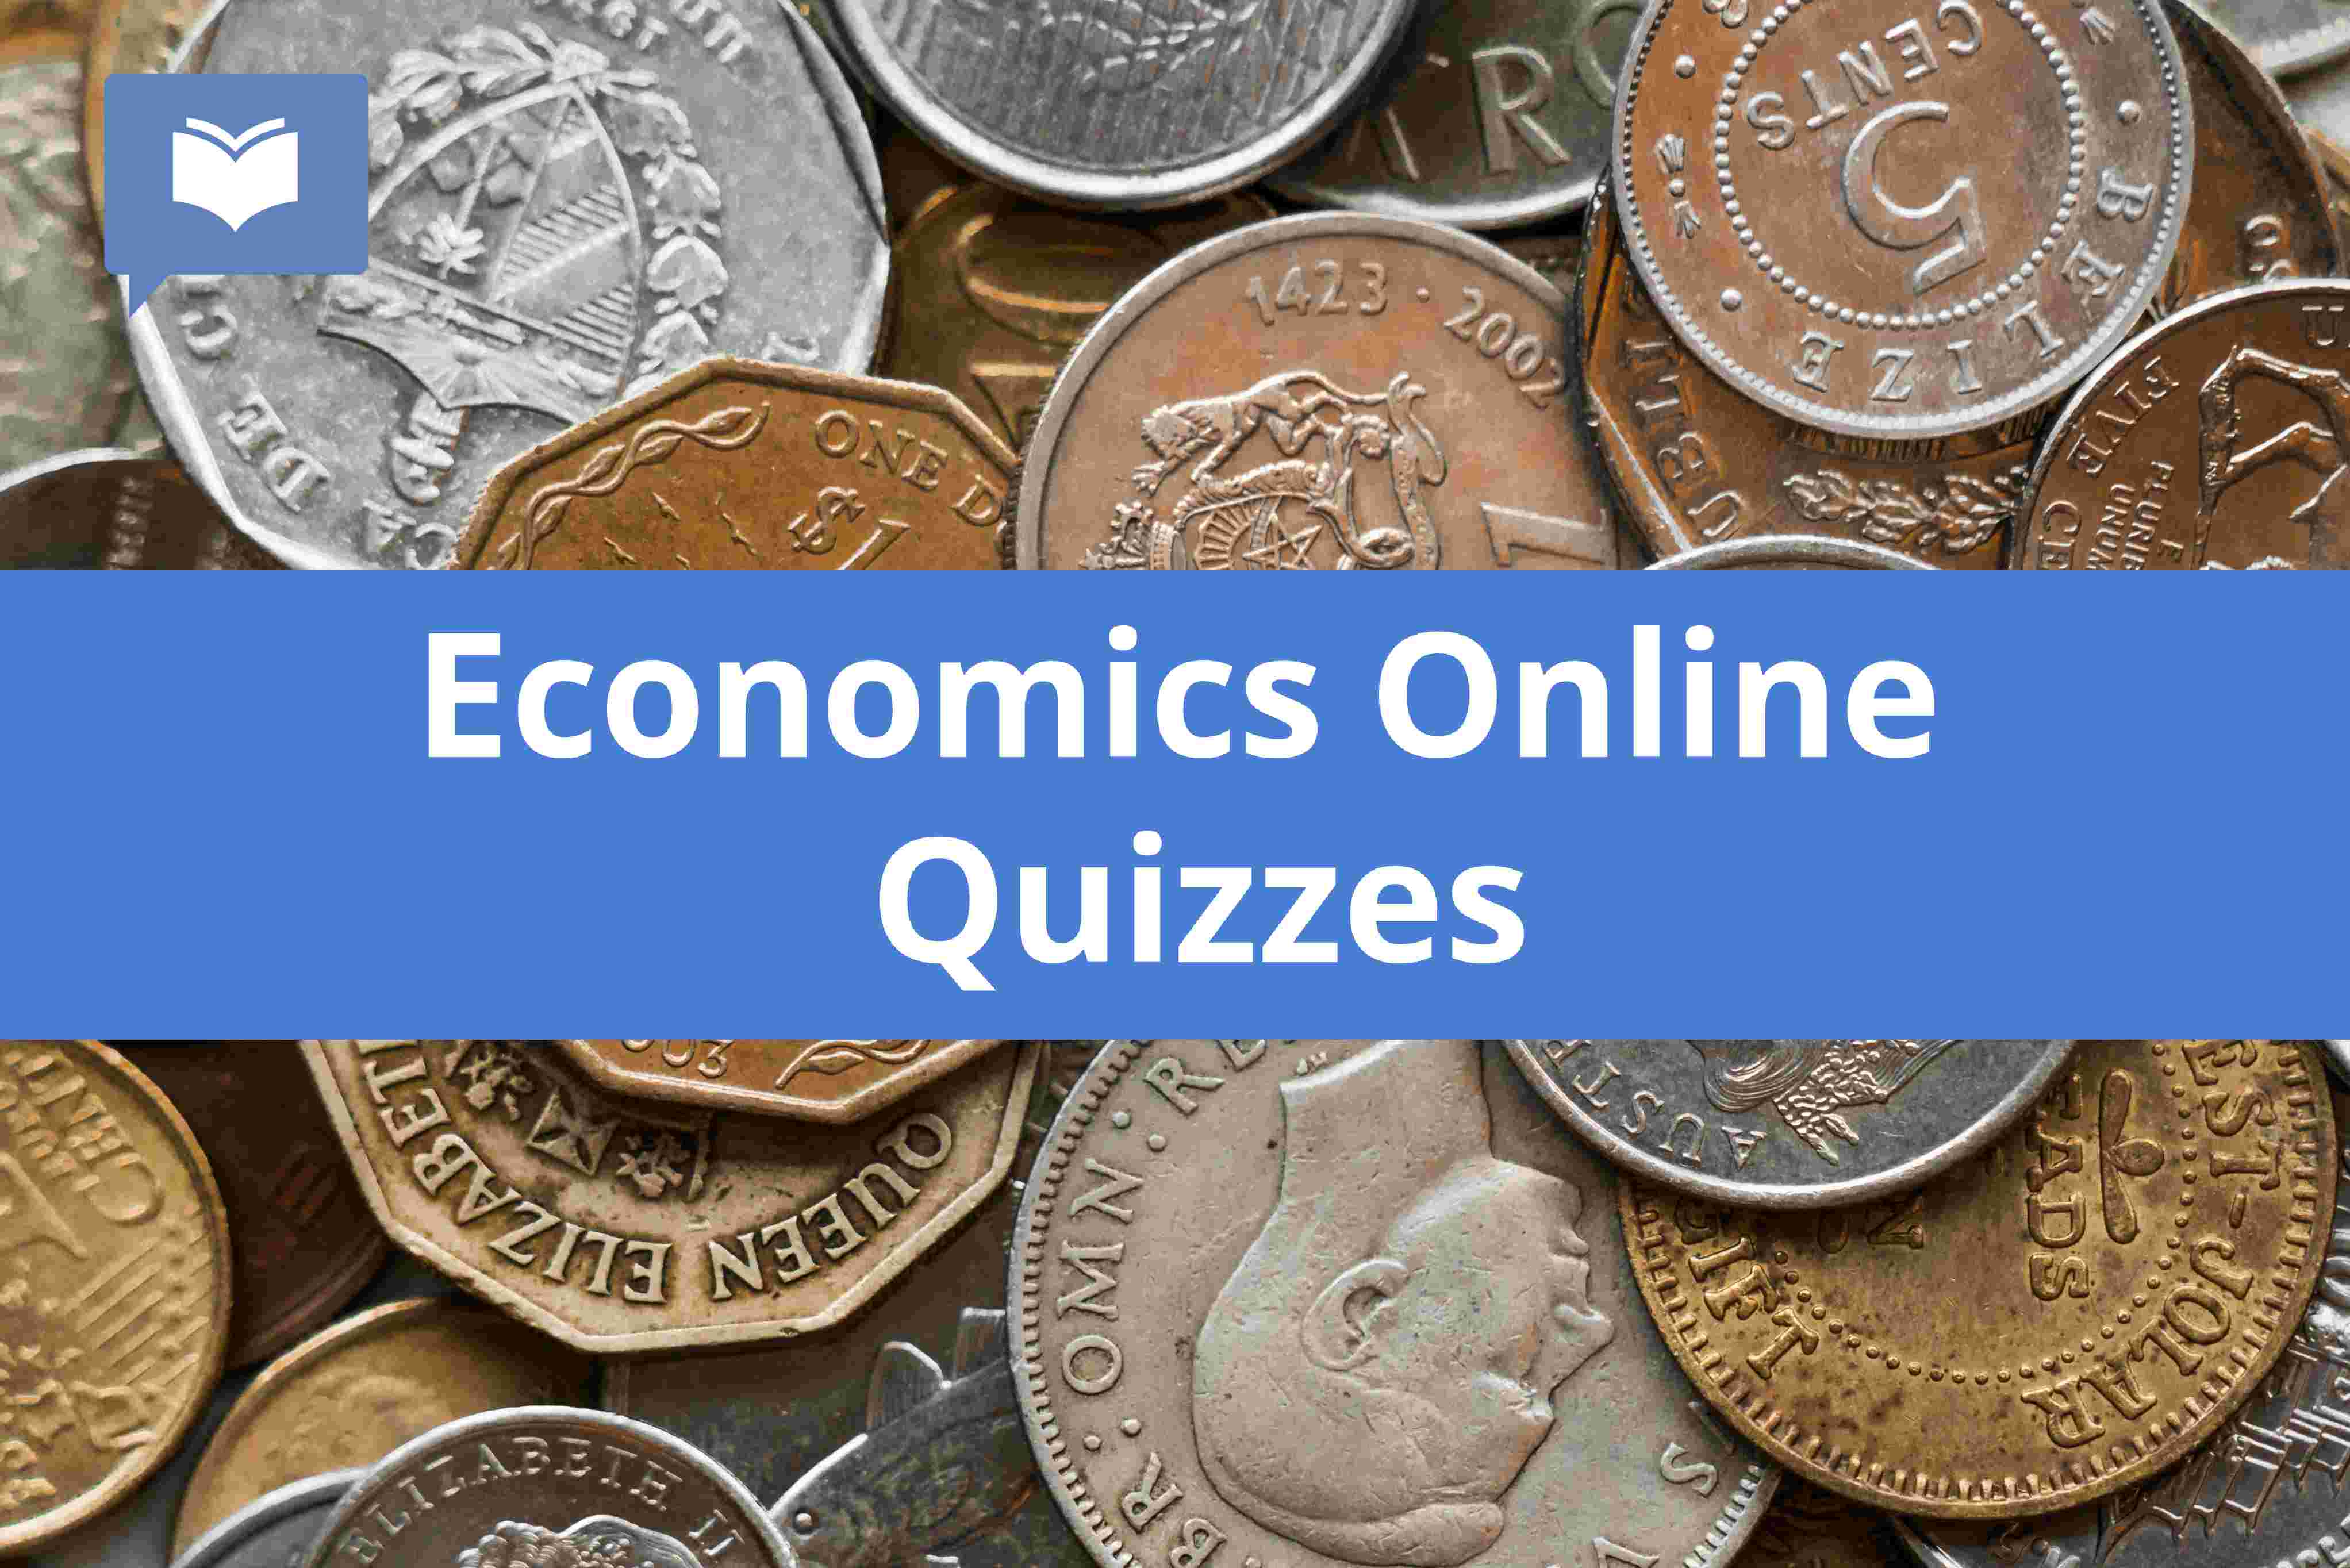 Economics Online Quizzes